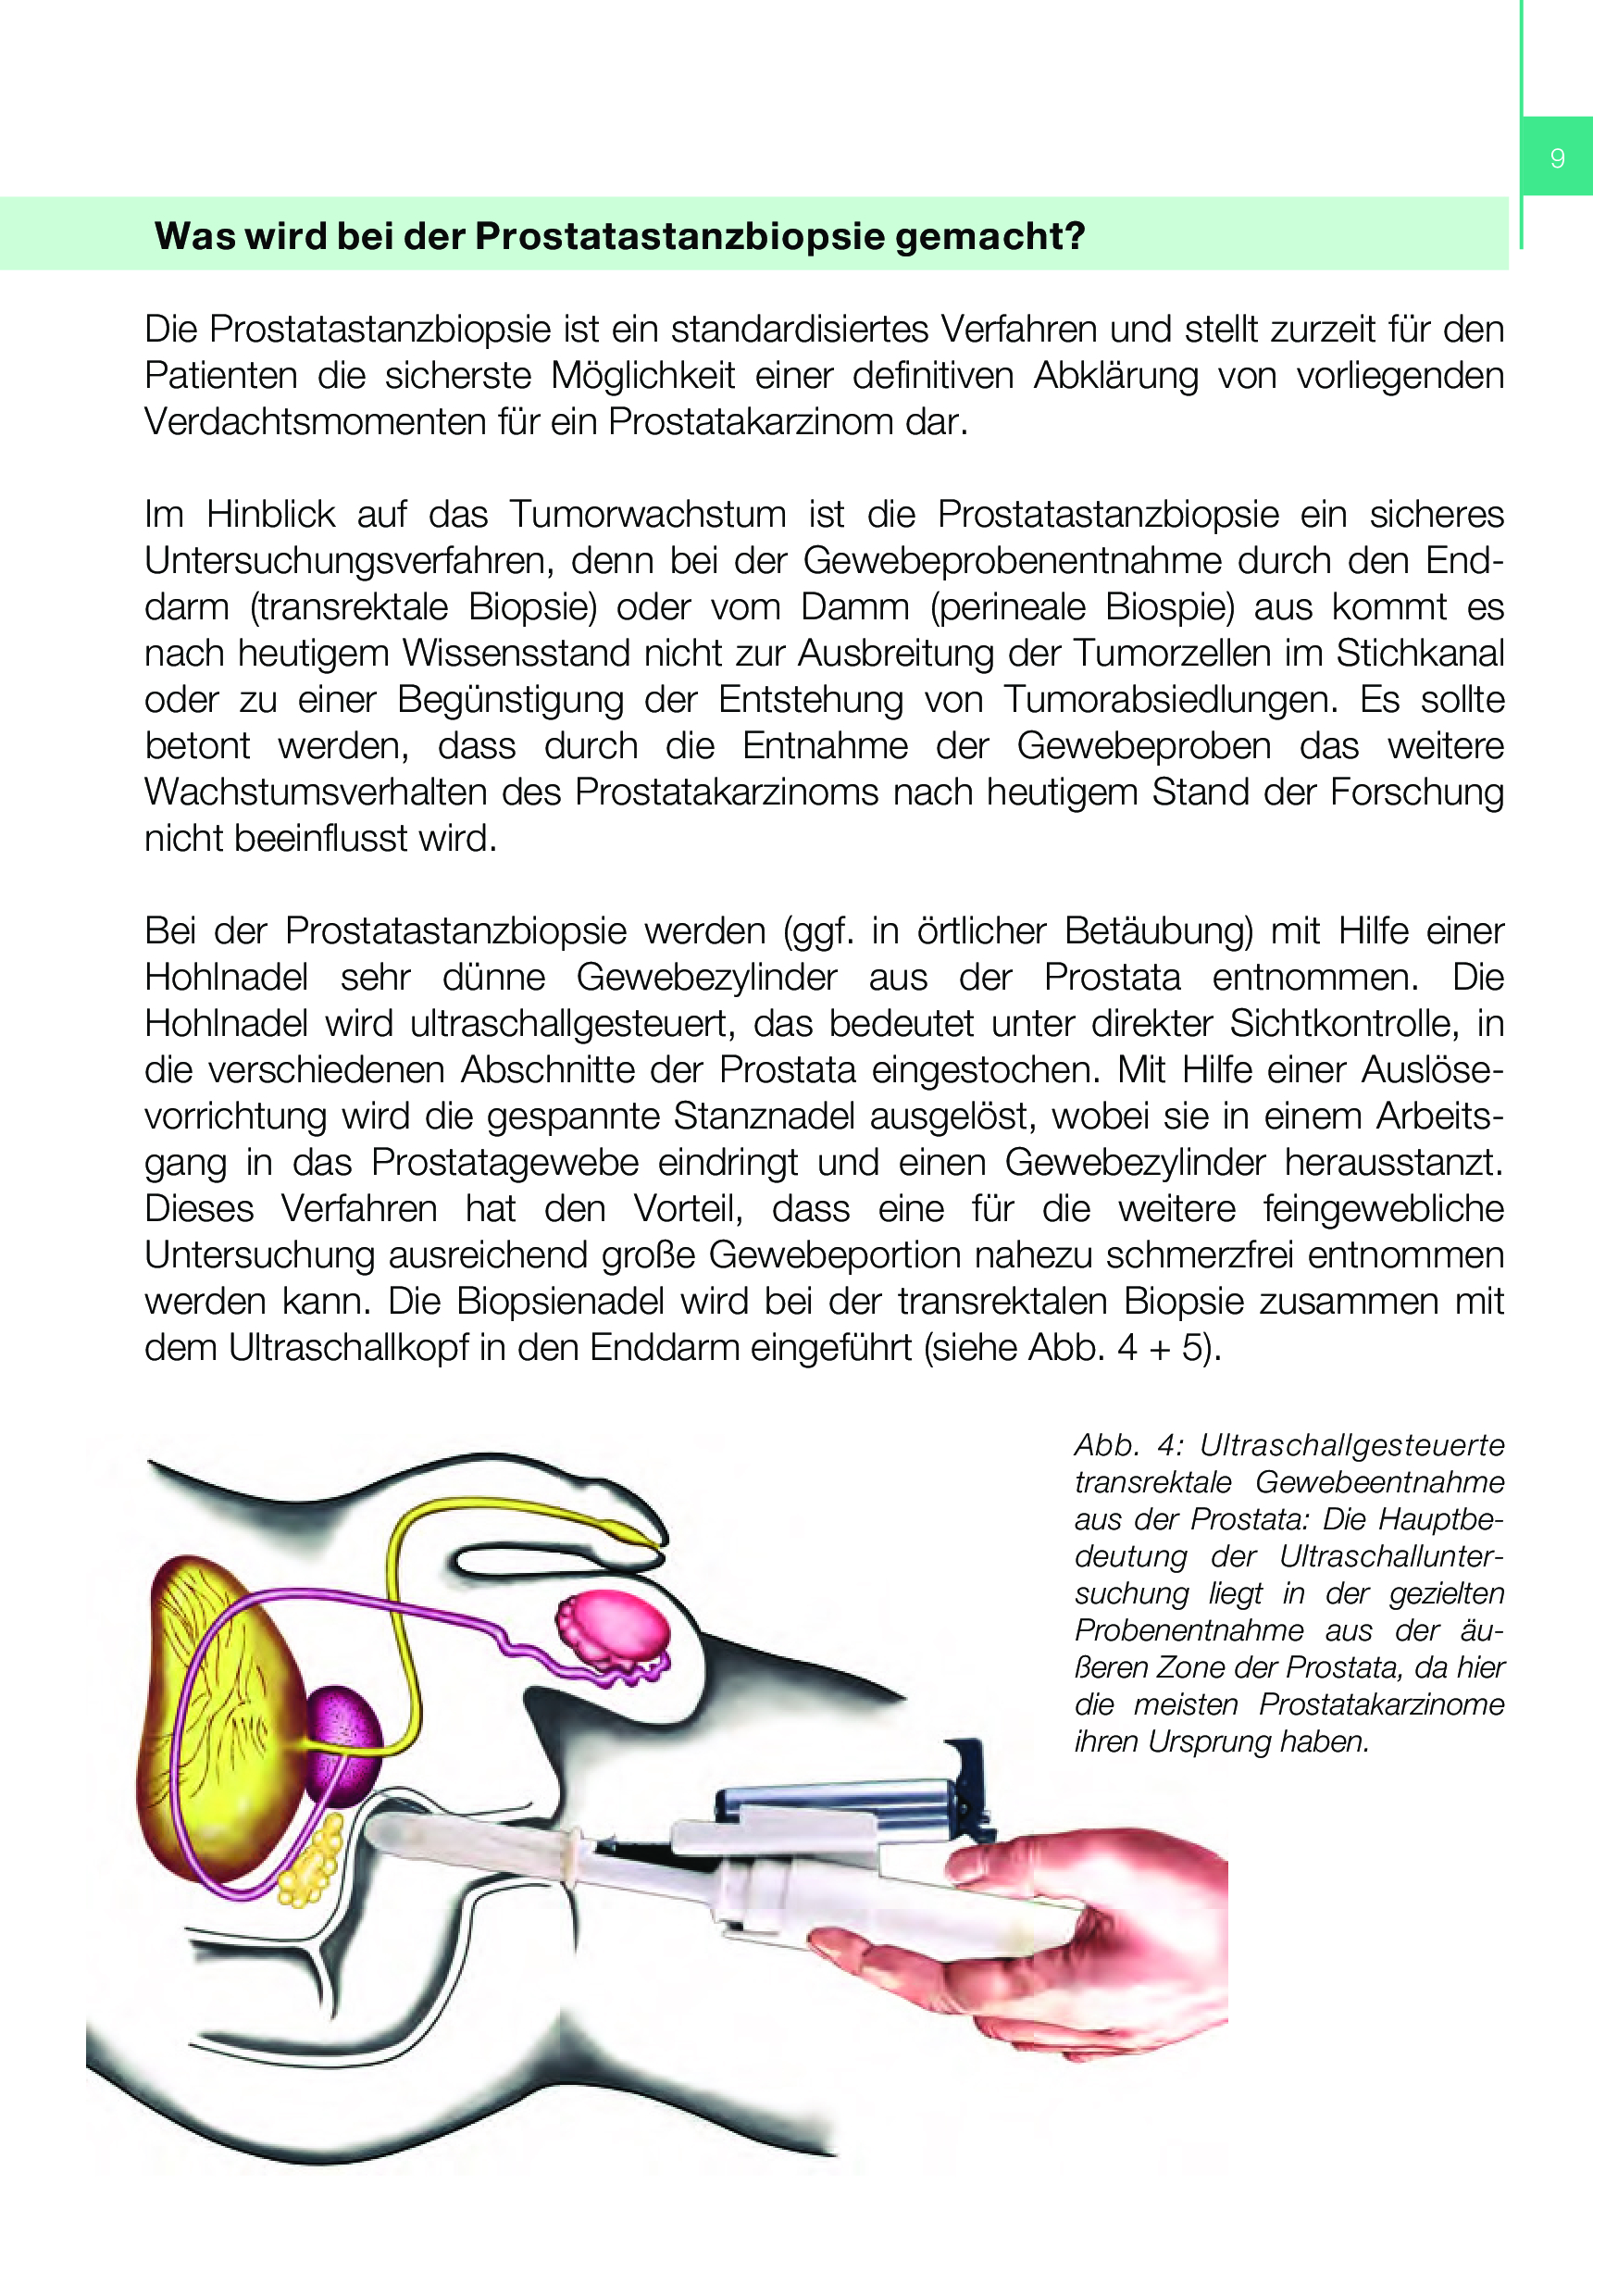 Die Prostatastanzbiopsie Gewebeentnahme aus der Prostata Prostata.de